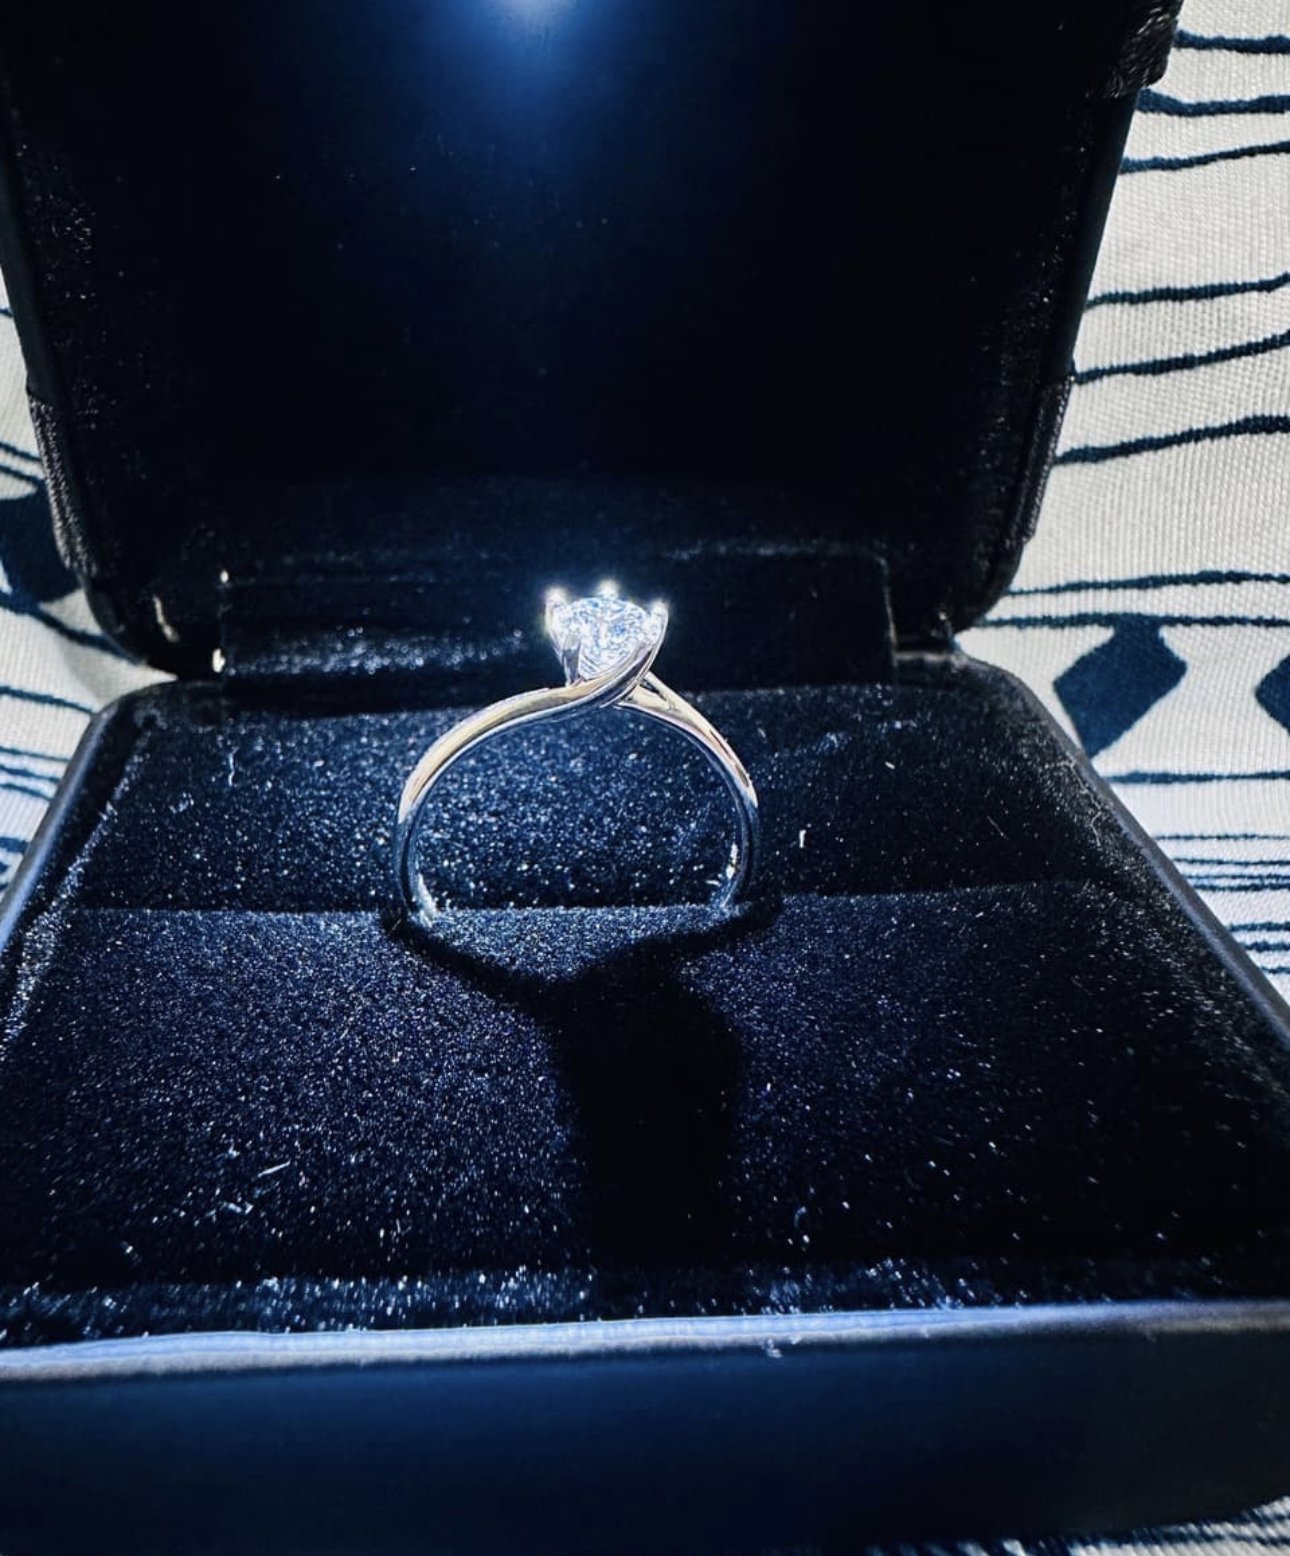 #求婚 求婚規劃紀錄-求婚戒指篇#亞爵鑽石#量戒圍#經驗分享-結婚經驗分享